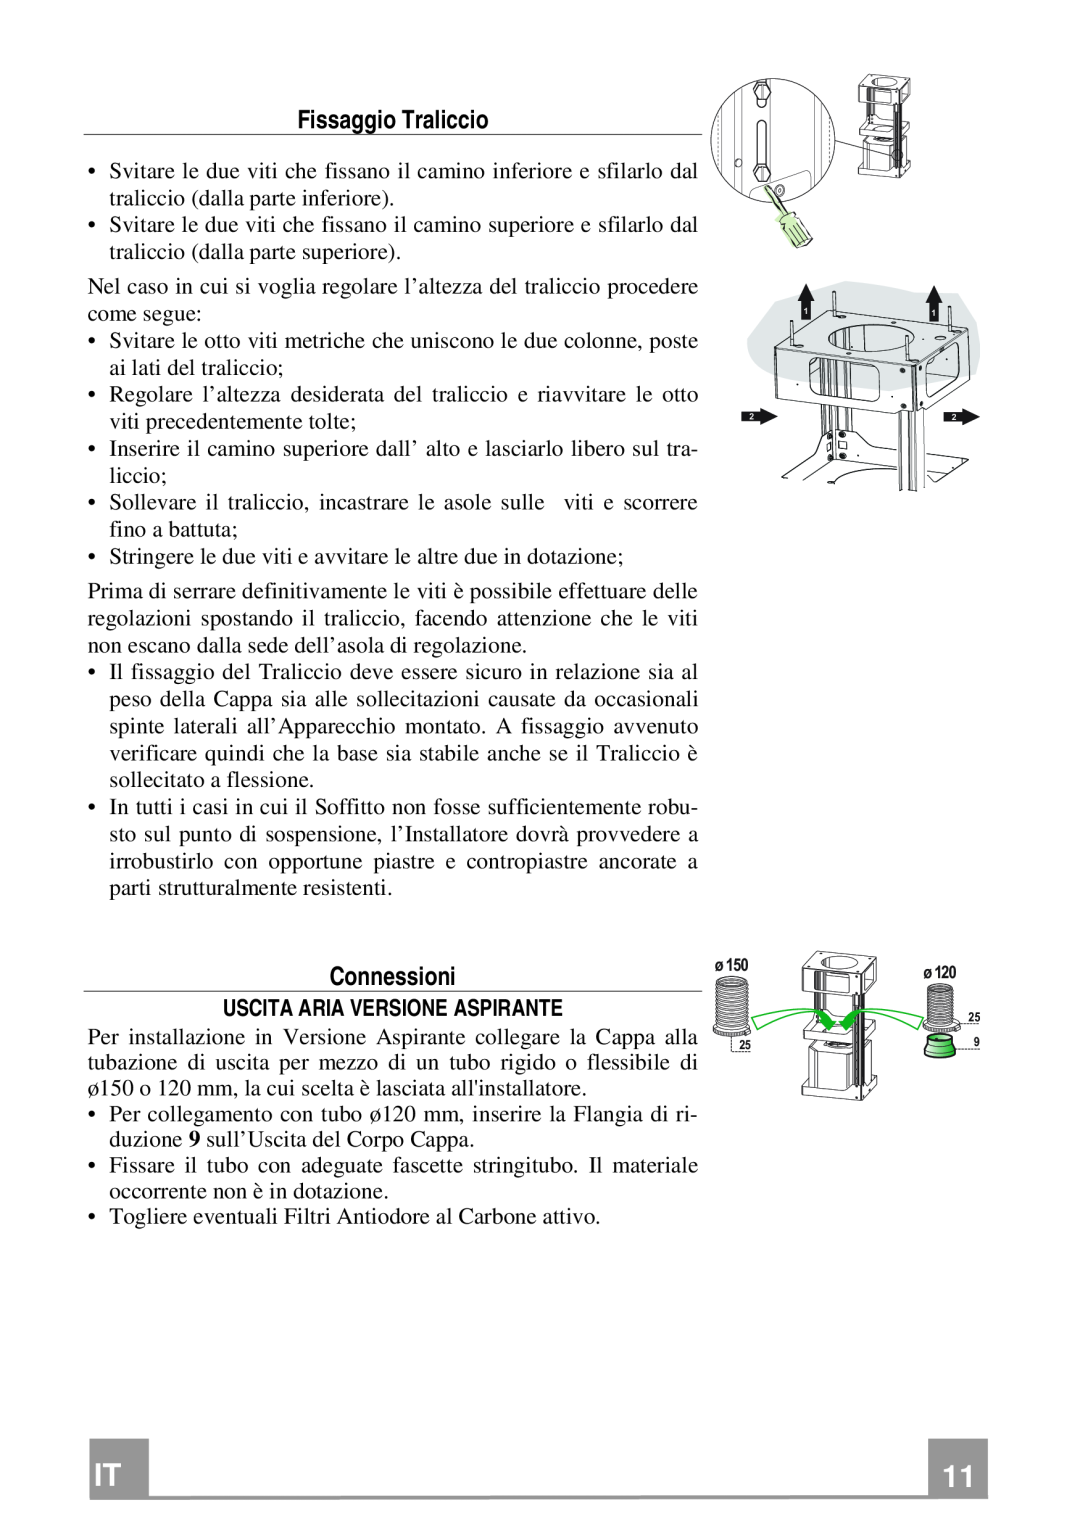 Franke Consumer Products FGC 906 I manual Fissaggio Traliccio, Connessioni, Uscita Aria Versione Aspirante 